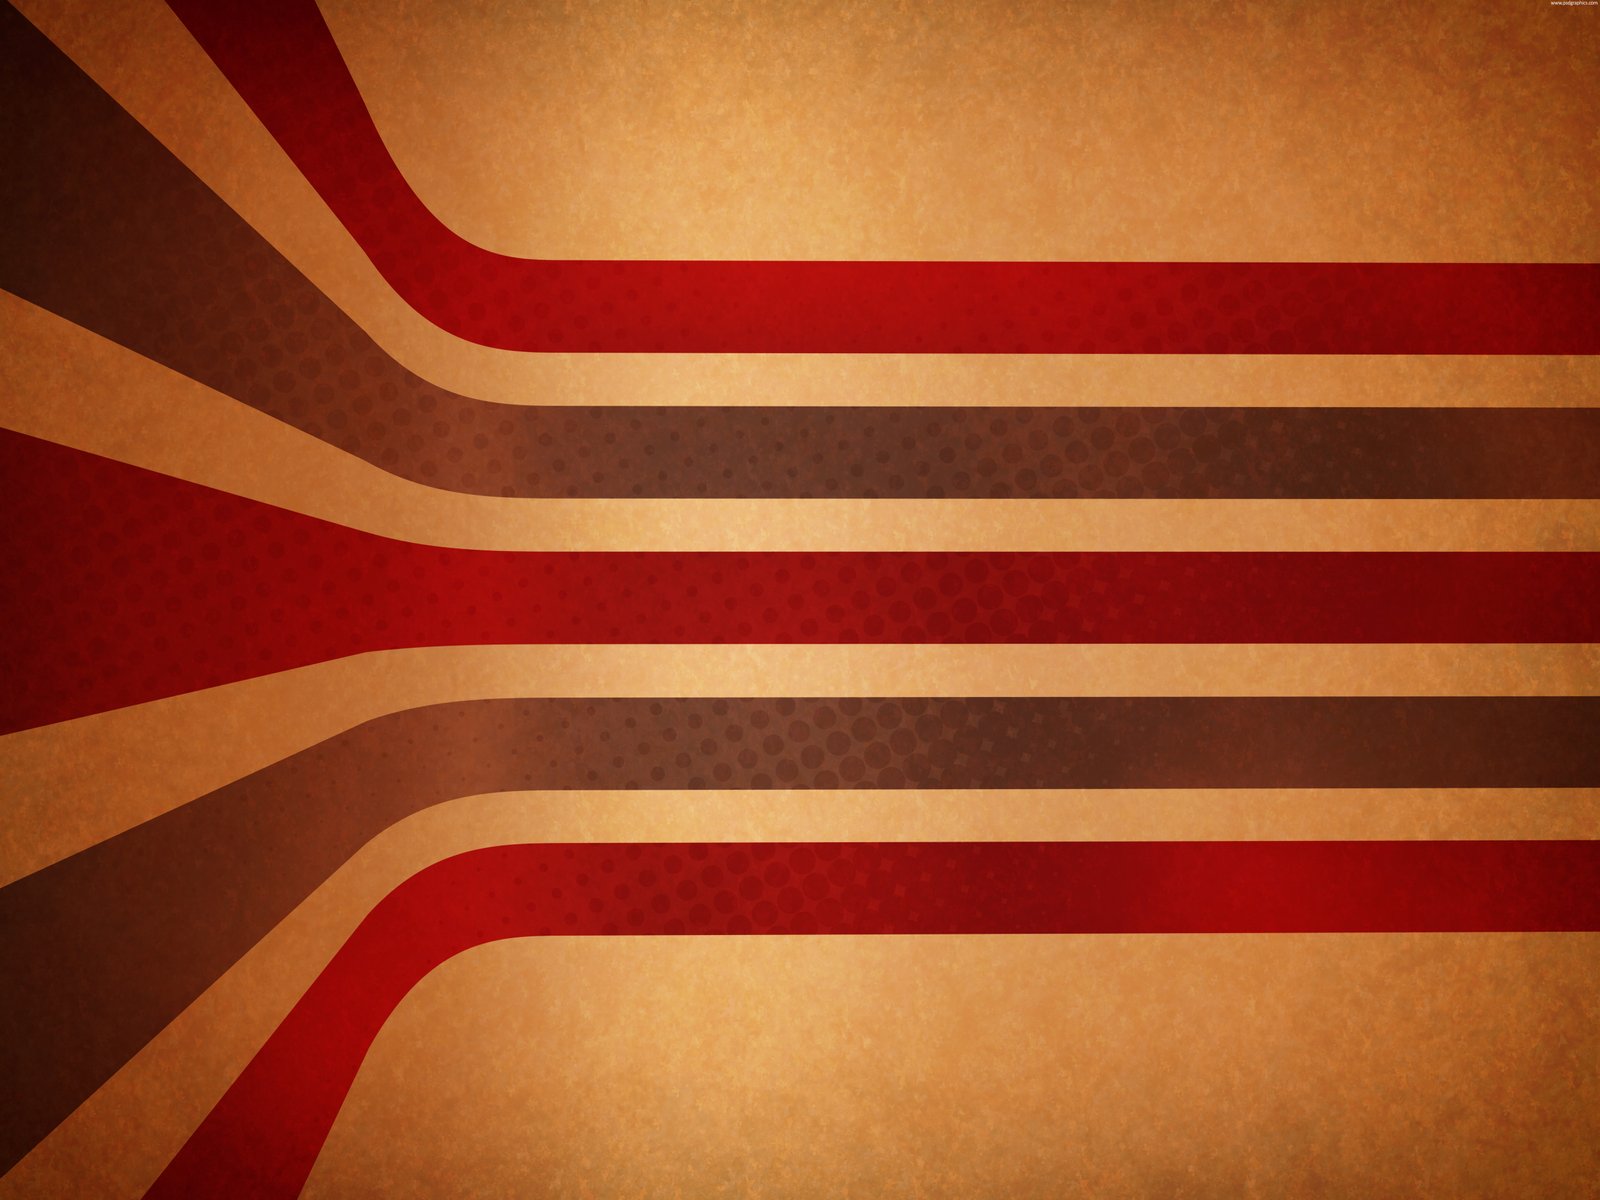 red vintage stripes